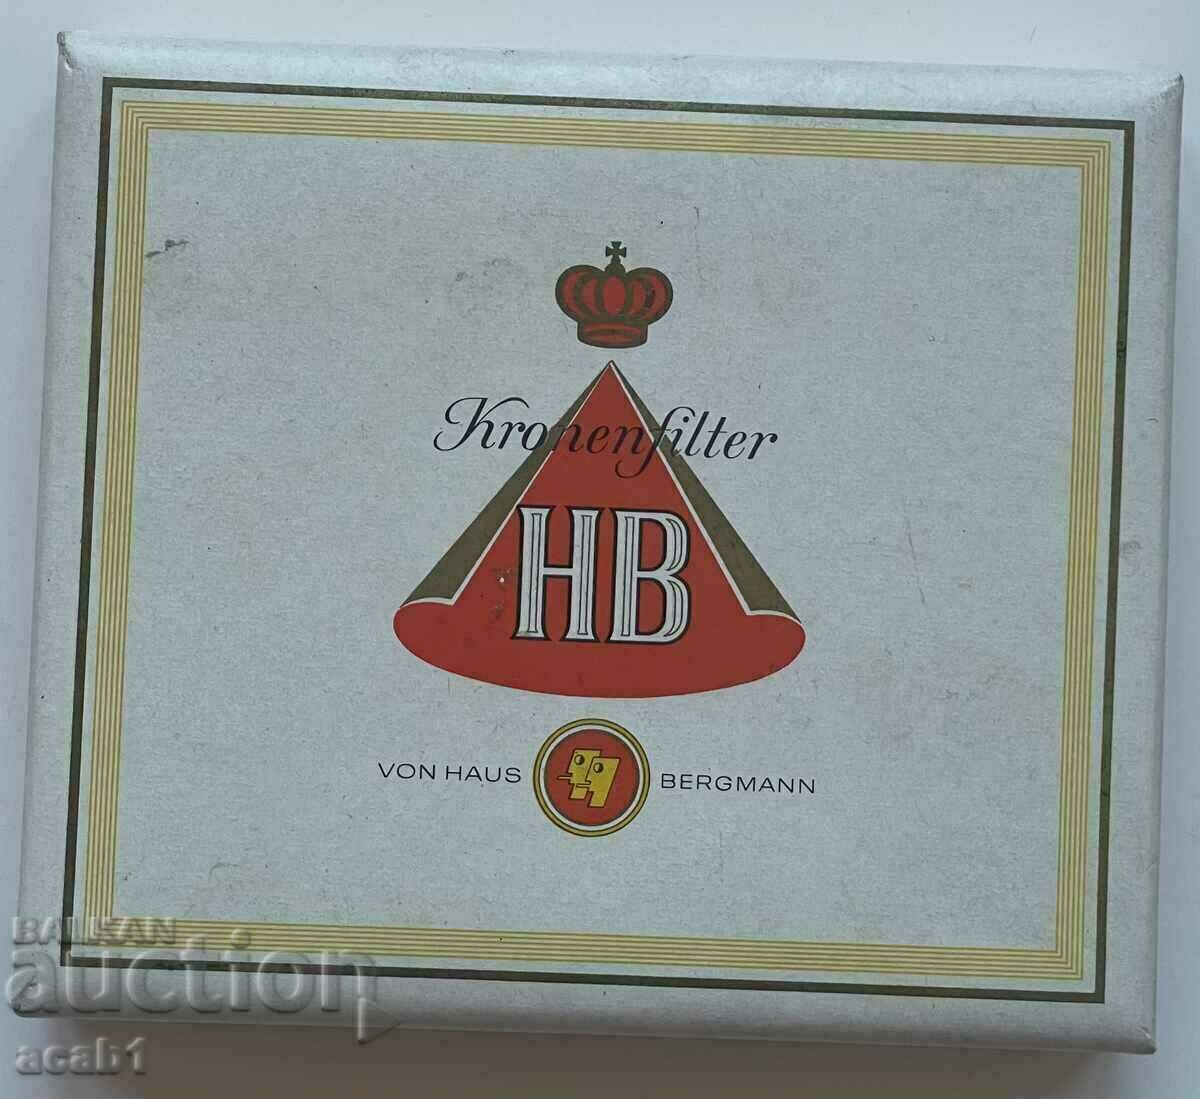 Box of HB Cigarettes